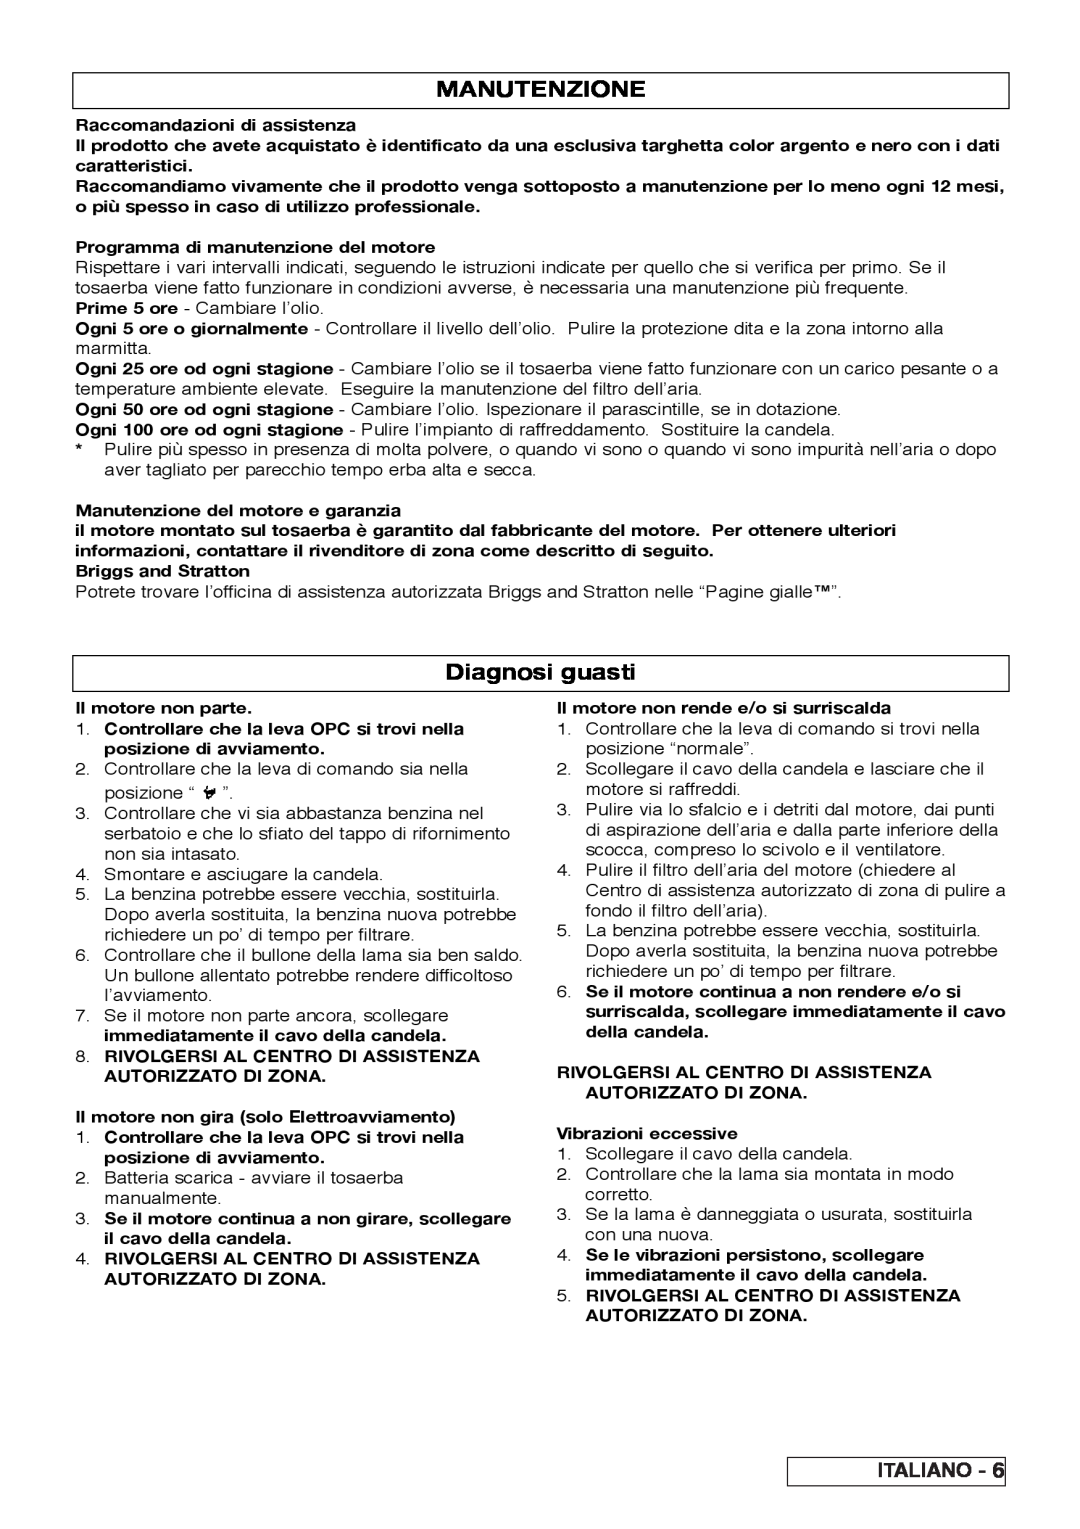 Husqvarna R 43SE manual Manutenzione, Diagnosi guasti, Italiano 